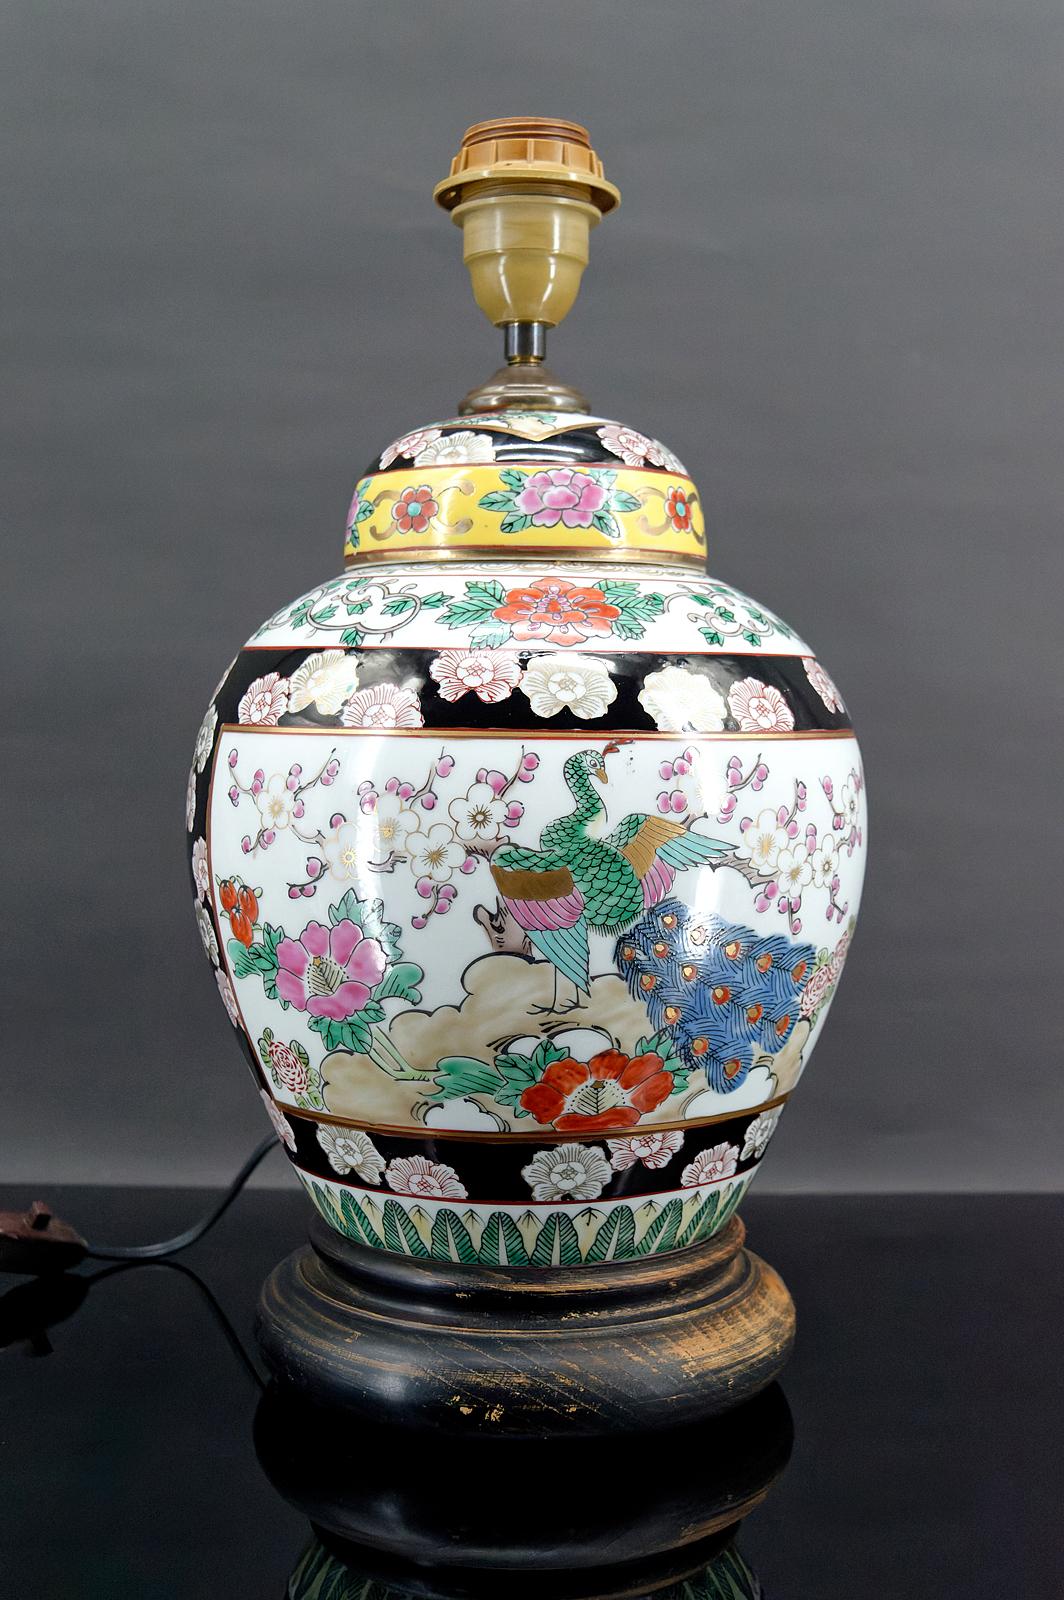 Vase asiatique en porcelaine monté en lampe.
Décor floral et animalier : paons.
Chine, première partie du 20e siècle.
Très bon état, électricité OK.

Dimensions :
Hauteur : 40 cm
Diameter:21cm